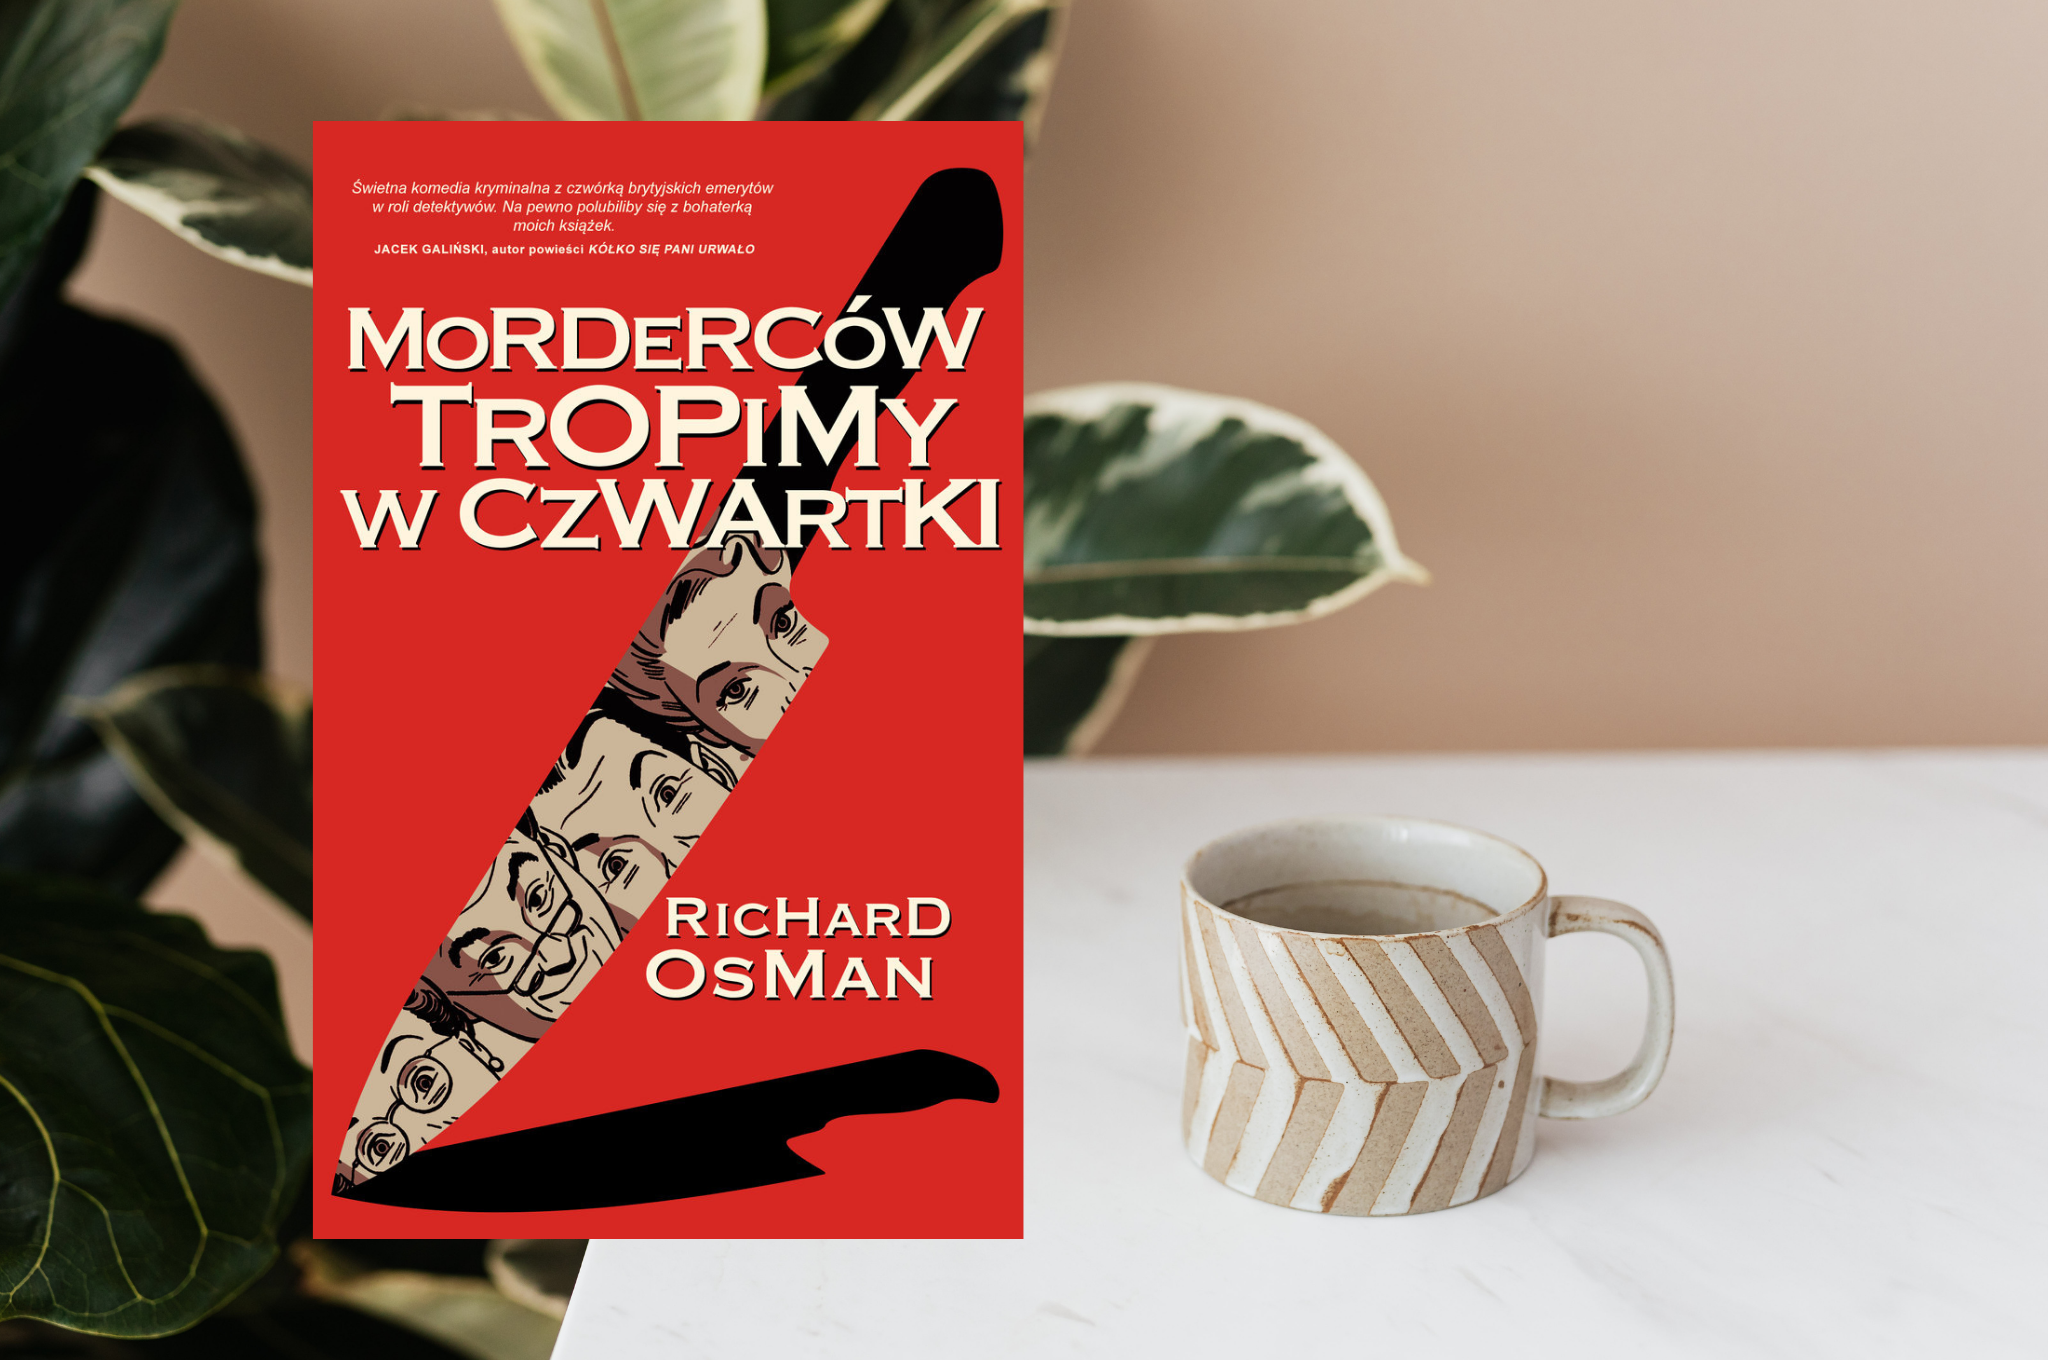 RICHARD OSMAN "MORDERCÓW TROPIMY W CZWARTKI"